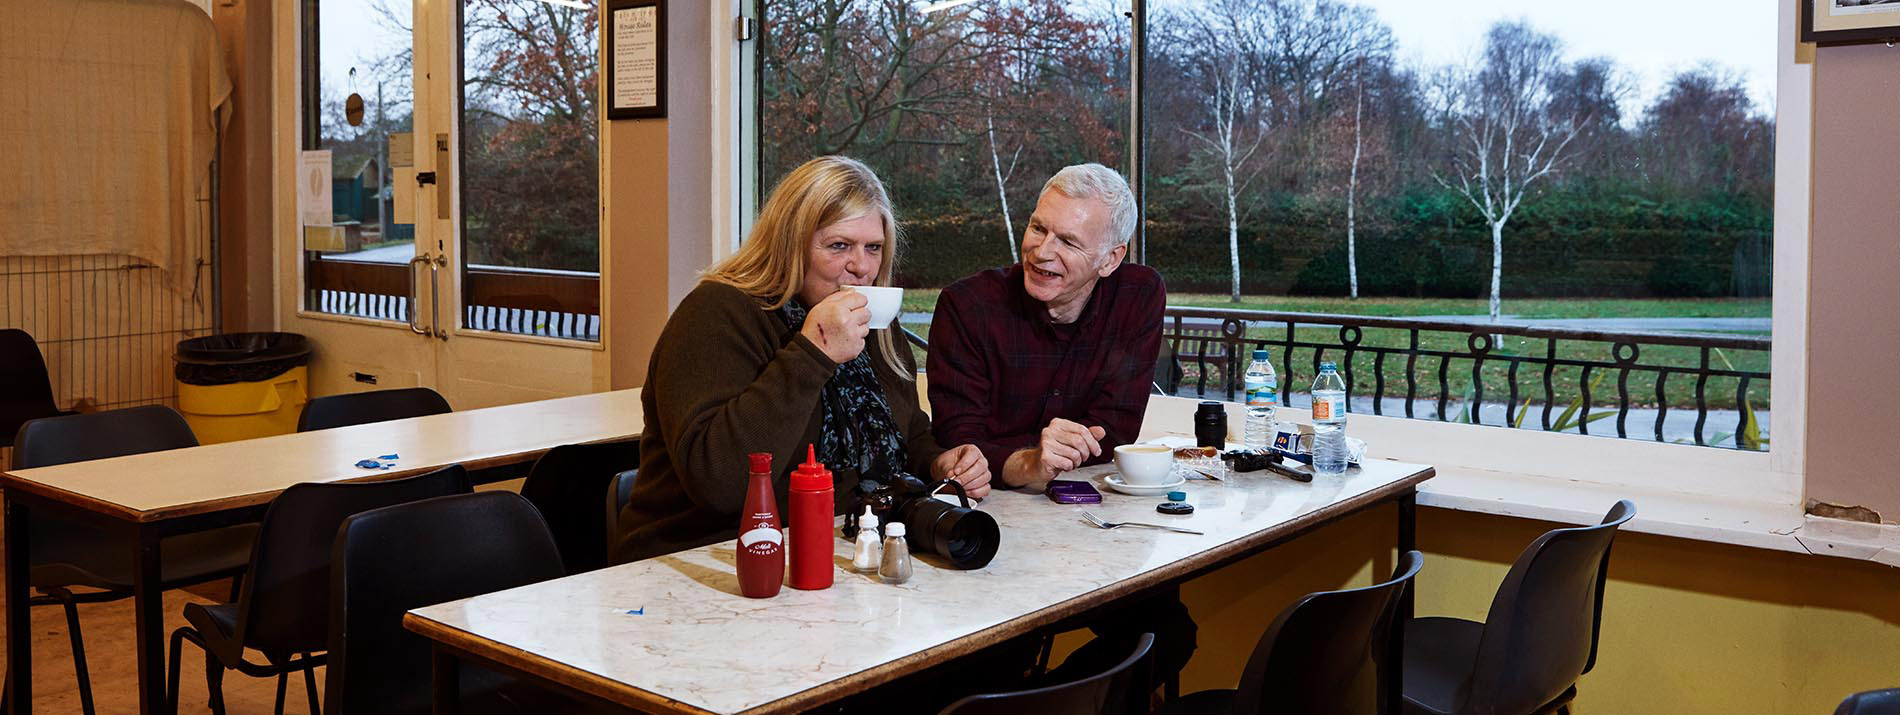 Ένας χαμογελαστός άντρας που κάθεται σε ένα τραπέζι με μια γυναίκα που πίνει ένα ρόφημα από μία κούπα.